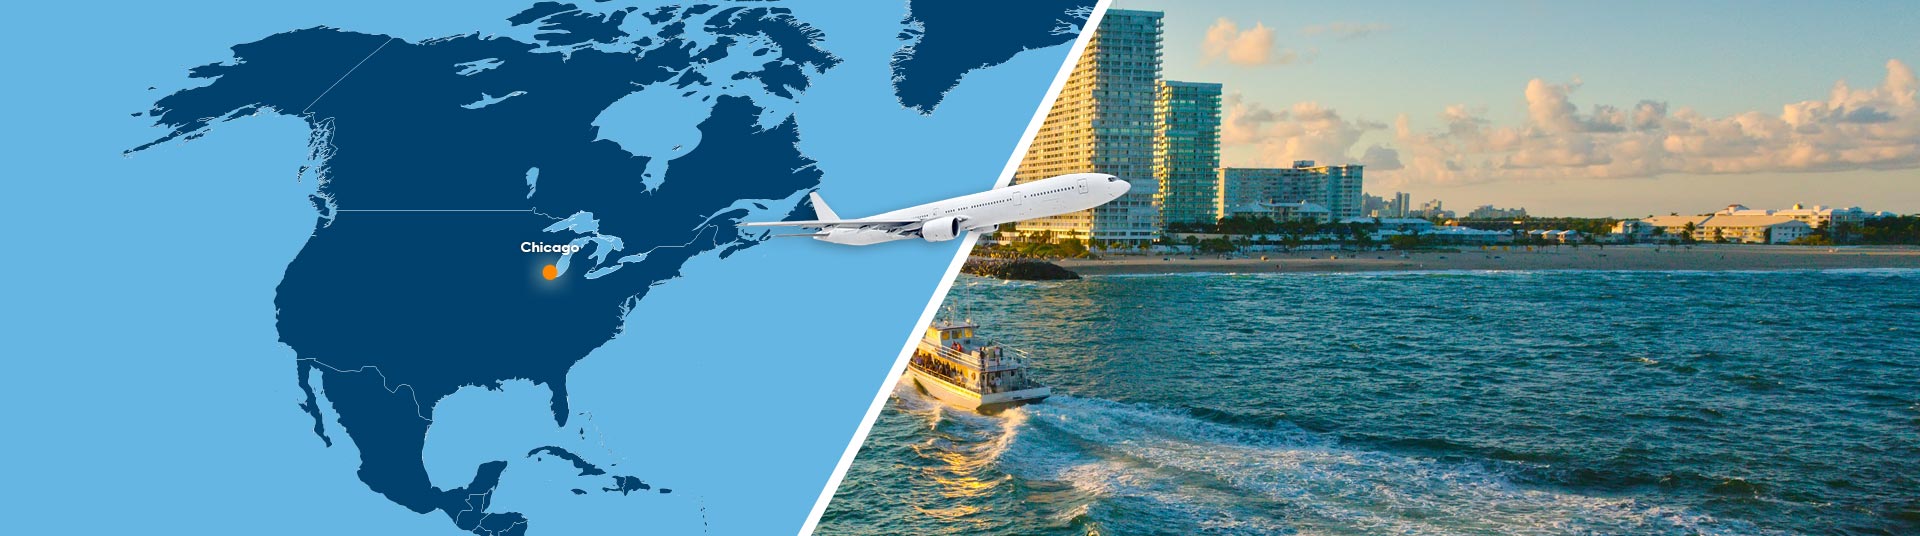 Vol Chicago Fort Lauderdale pas cher : Réserver un billet avion CHI-FLL